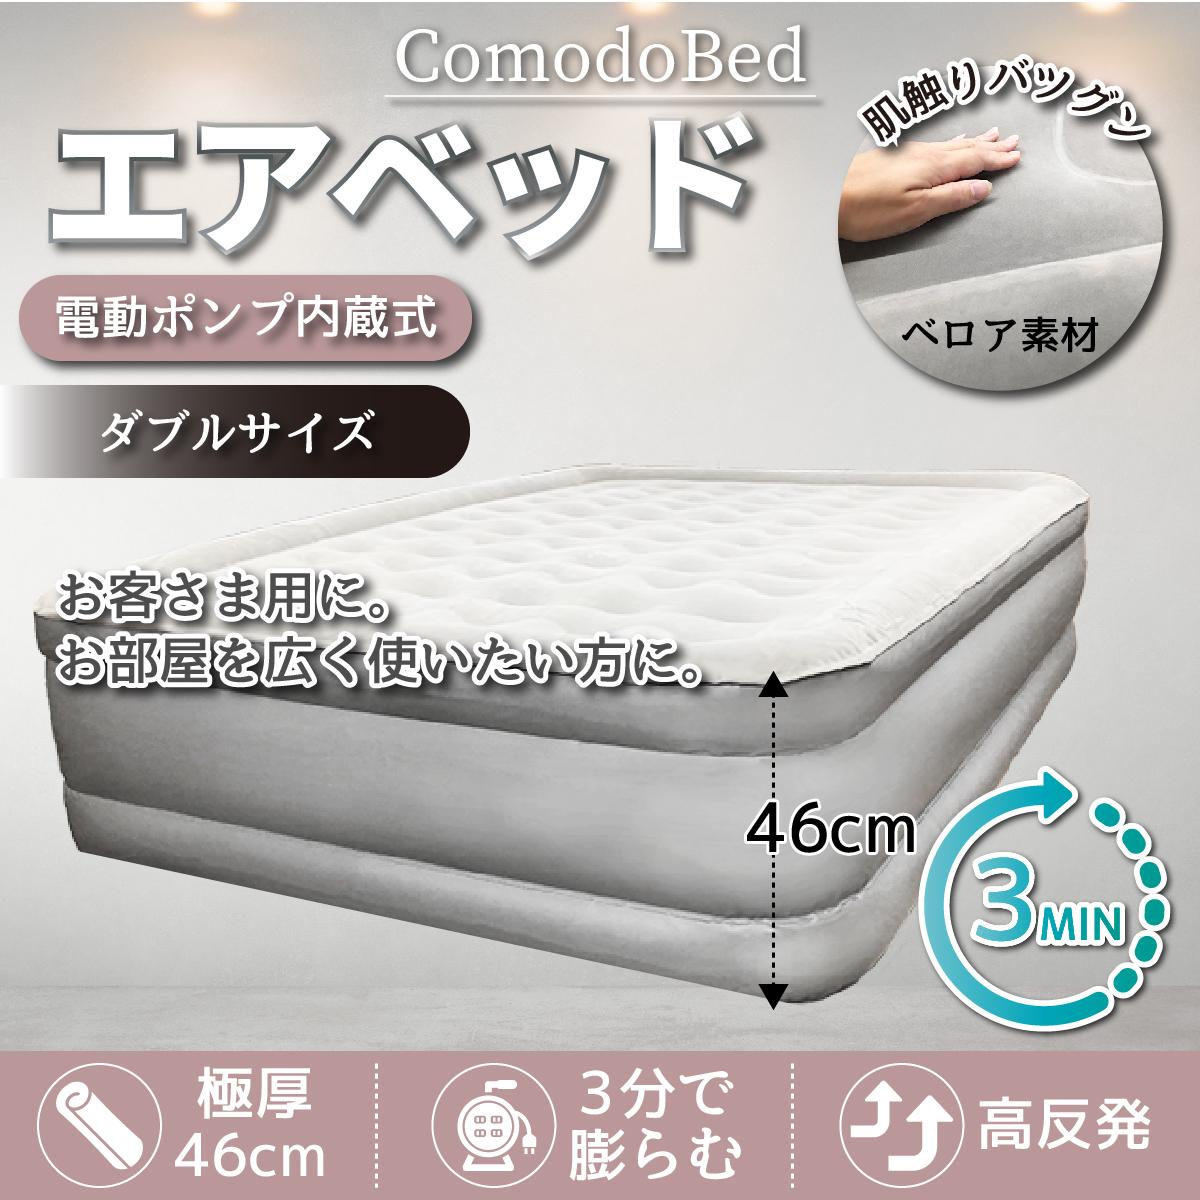 電動 エアーベッド コモドベッド ダブル サイズ シングル もございます ベッド ベット 空気 エアリ 送料無料